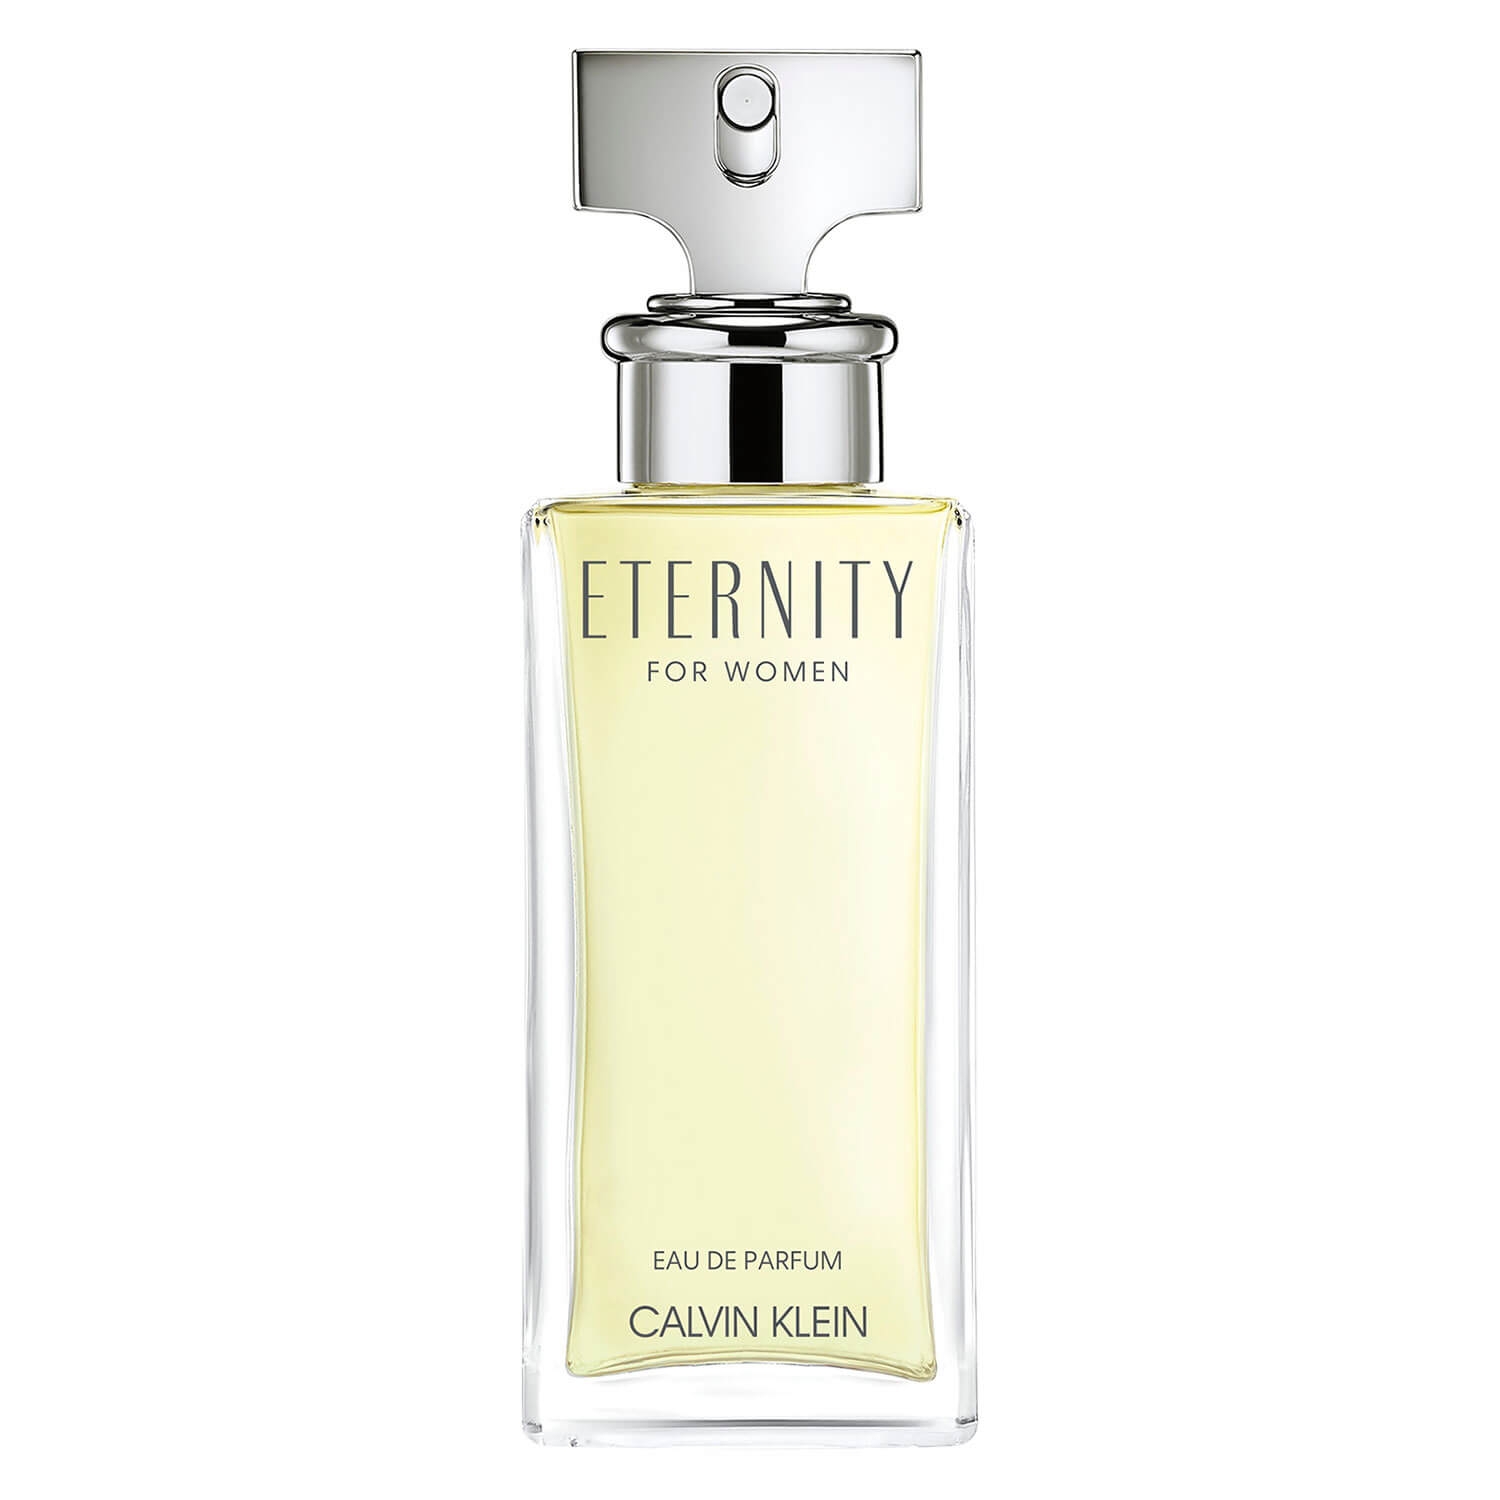 Produktbild von Eternity - Eau de Parfum